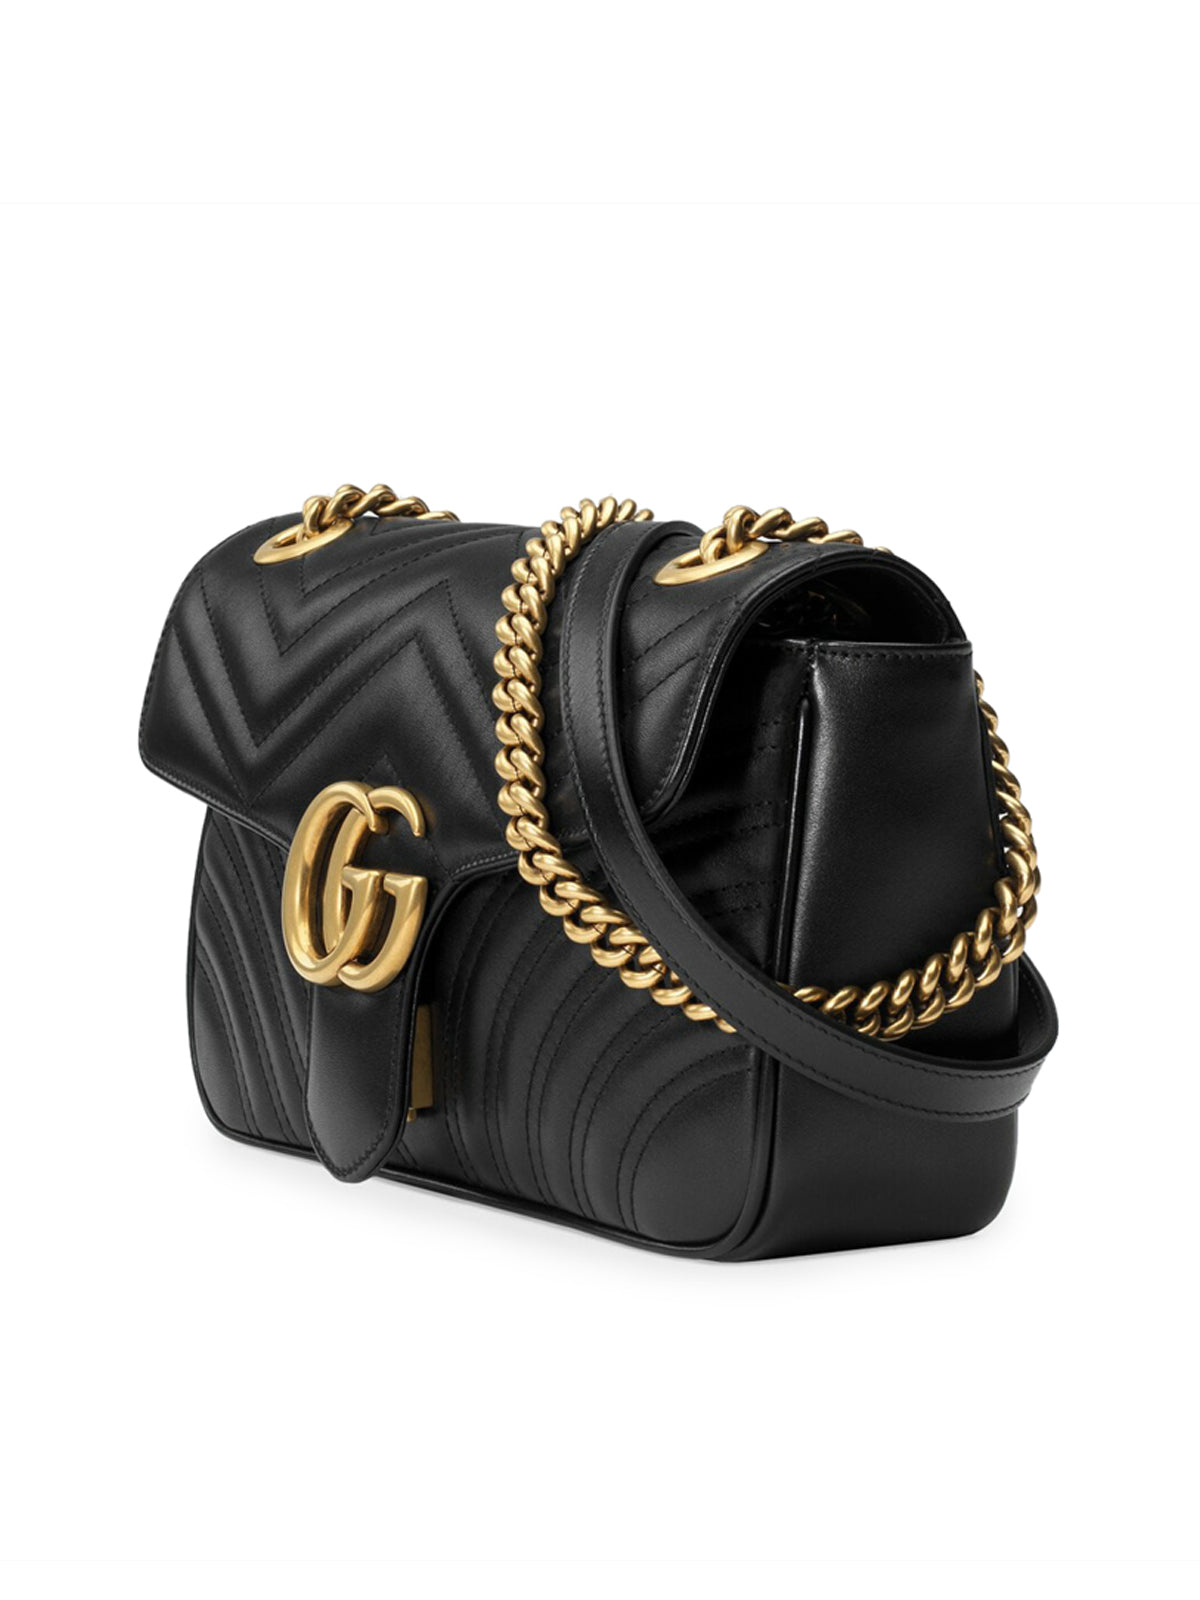 GG Marmont super mini bag – Suit Negozi Row